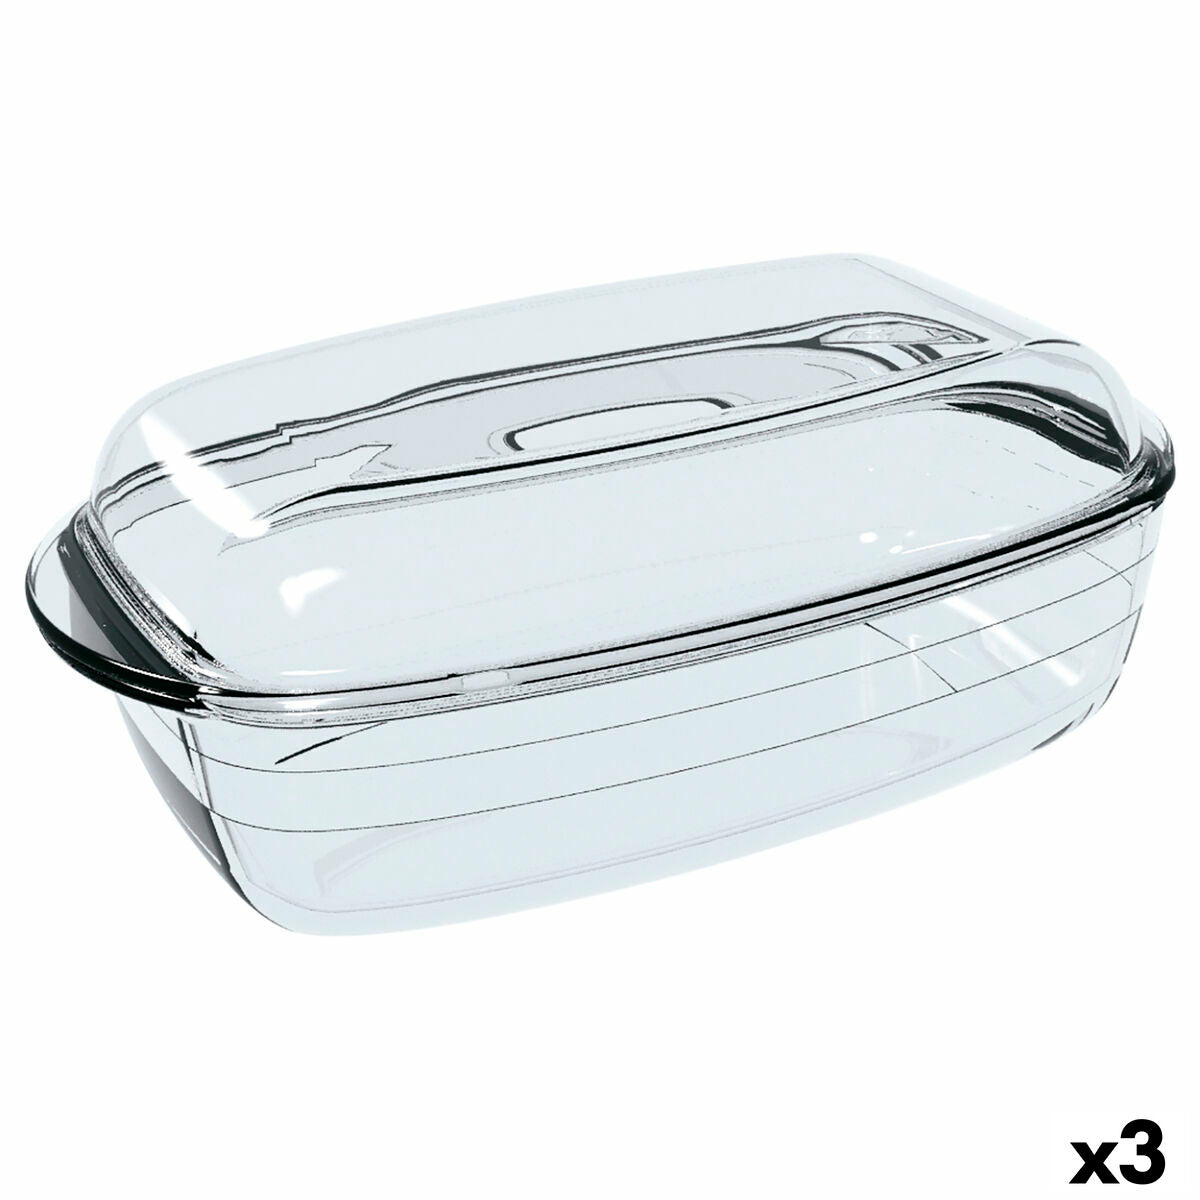 Oven Mould Ô Cuisine Rectangular With lid 37,5 x 22,5 x 10,6 cm Transparent (3 Units)